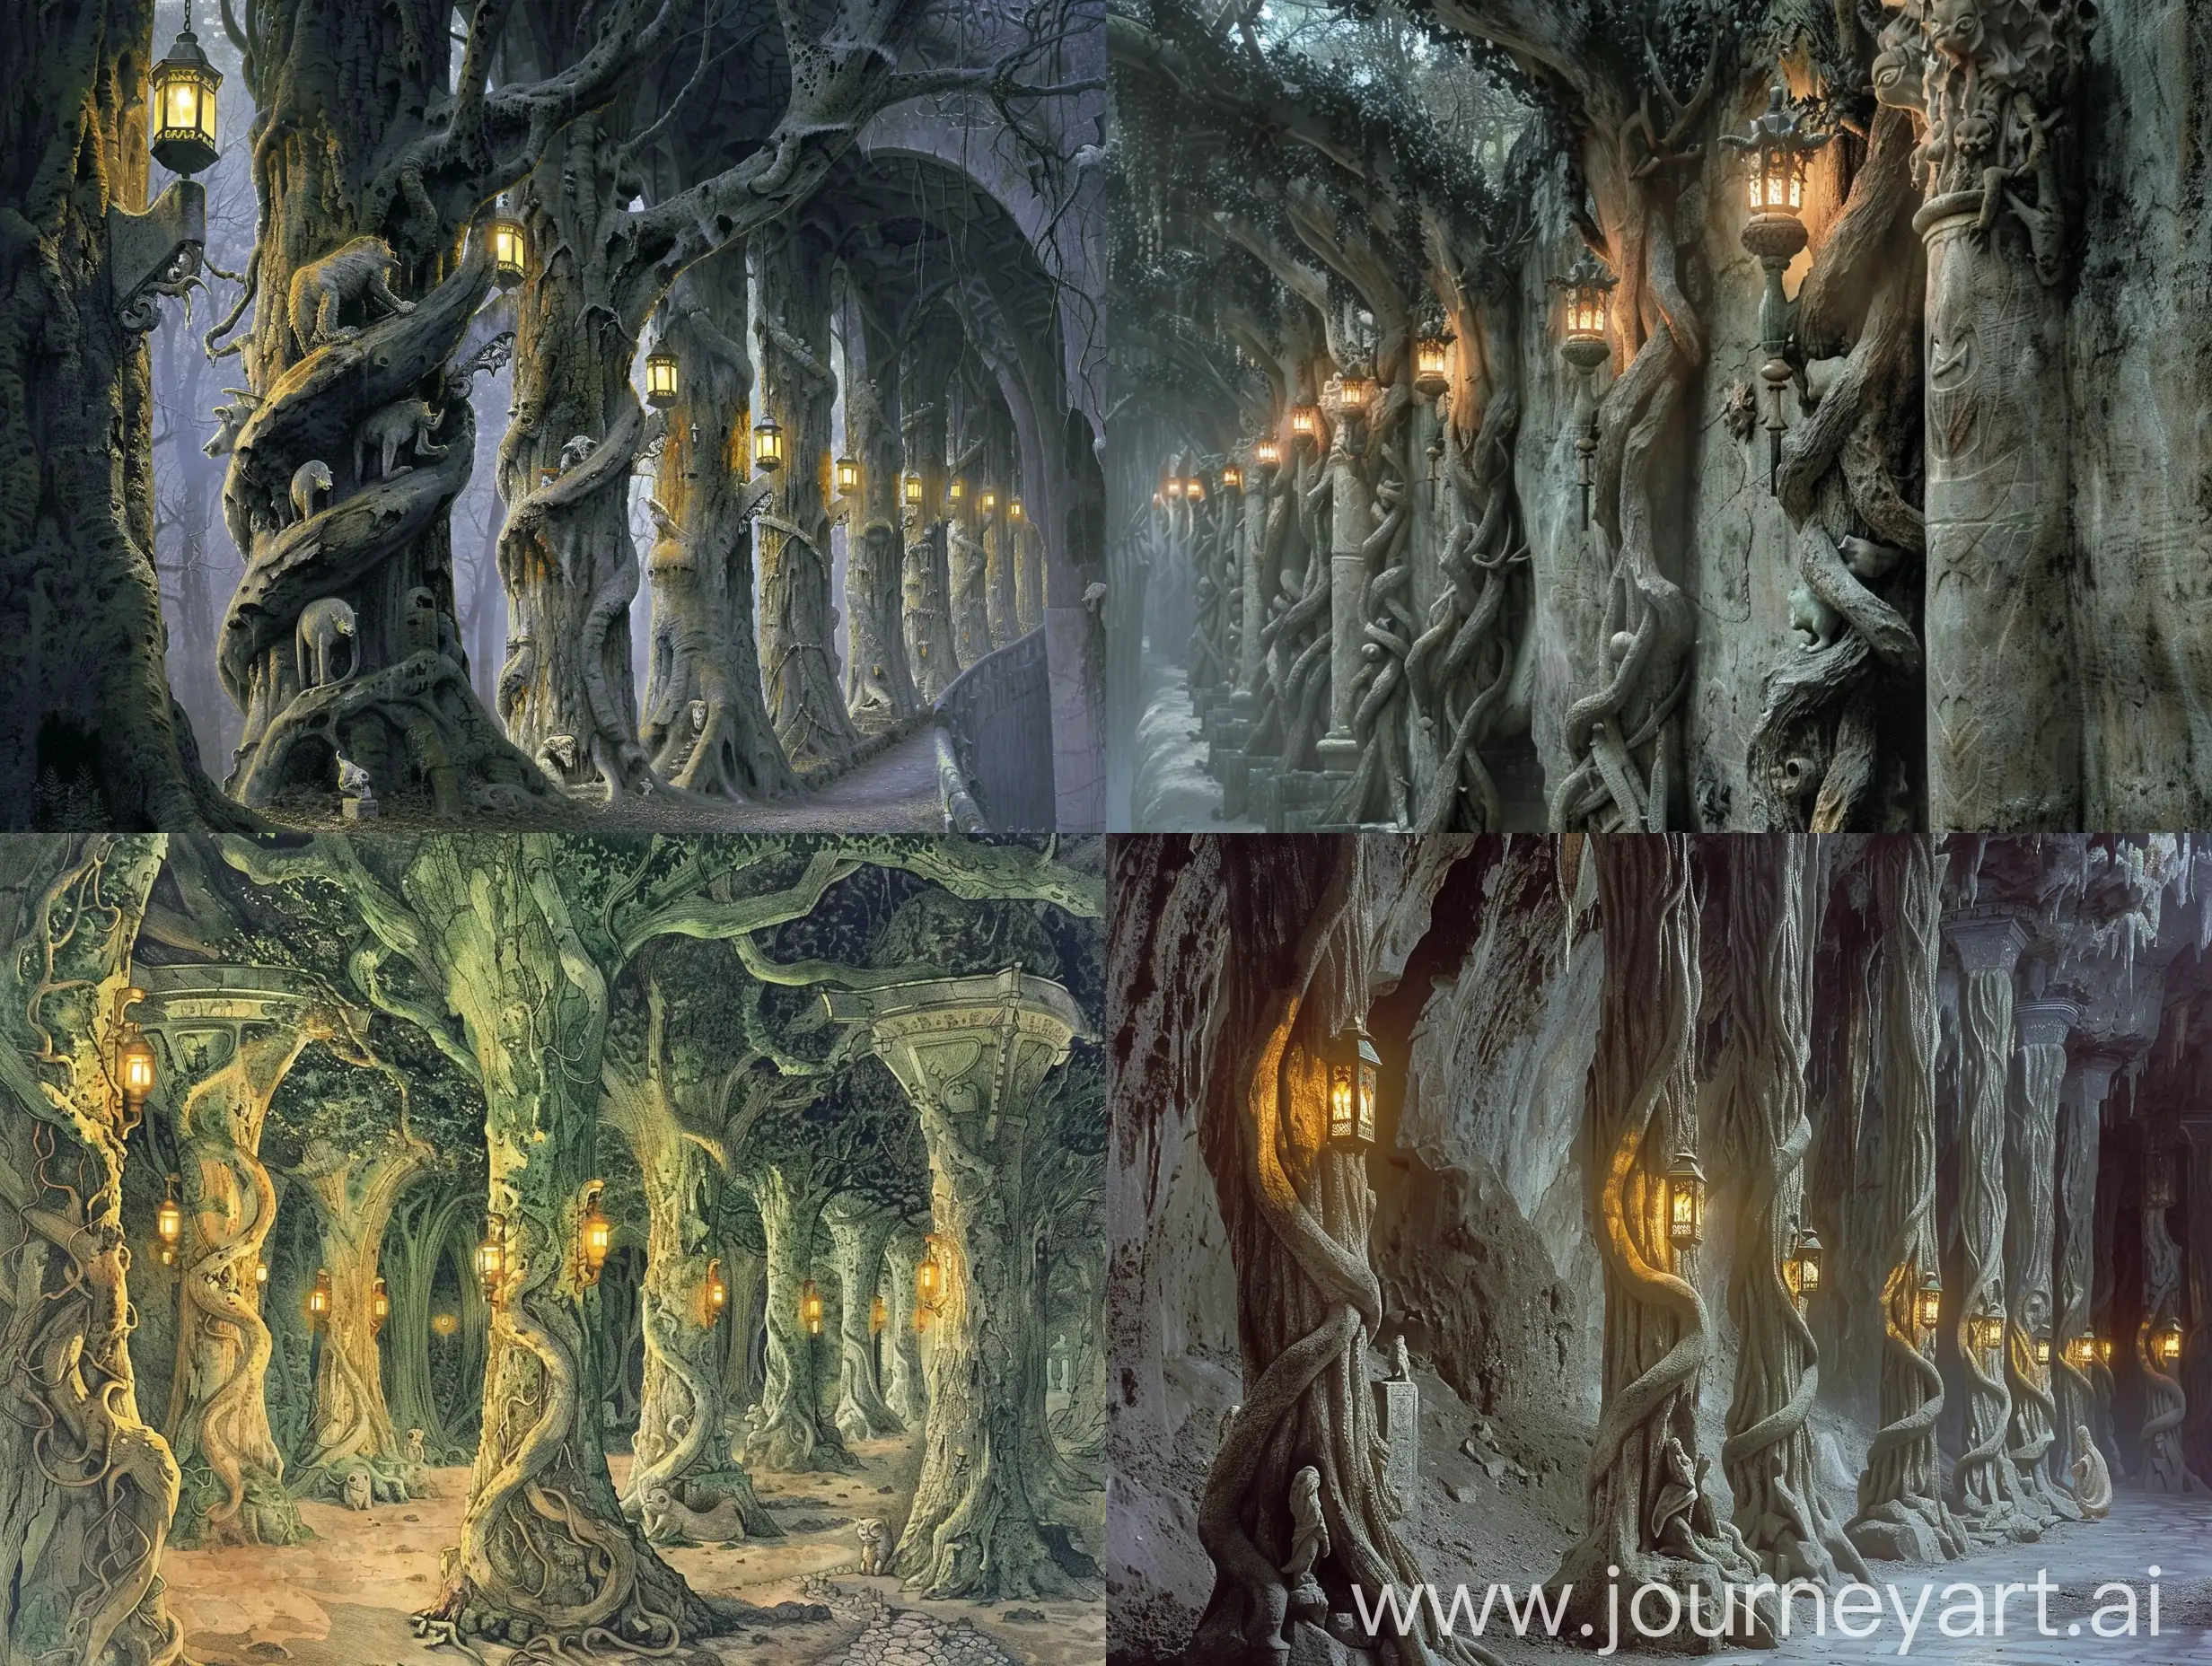 Menegroth, die Hauptstadt Doriaths. Doriath ist ein großer Buchenwald. Menegroth besteht aus unzähligen Grotten, Gängen und Höhlen, die die Stadt umfasste. Die Elben und die Zwerge aus Belegost, die an der Errichtung von Menegroth beteiligt waren, bauten mit Laternen erleuchtete Säulen nach dem Vorbild der Buchen, an denen sich Steinfiguren von Tieren entlang schlängelten.